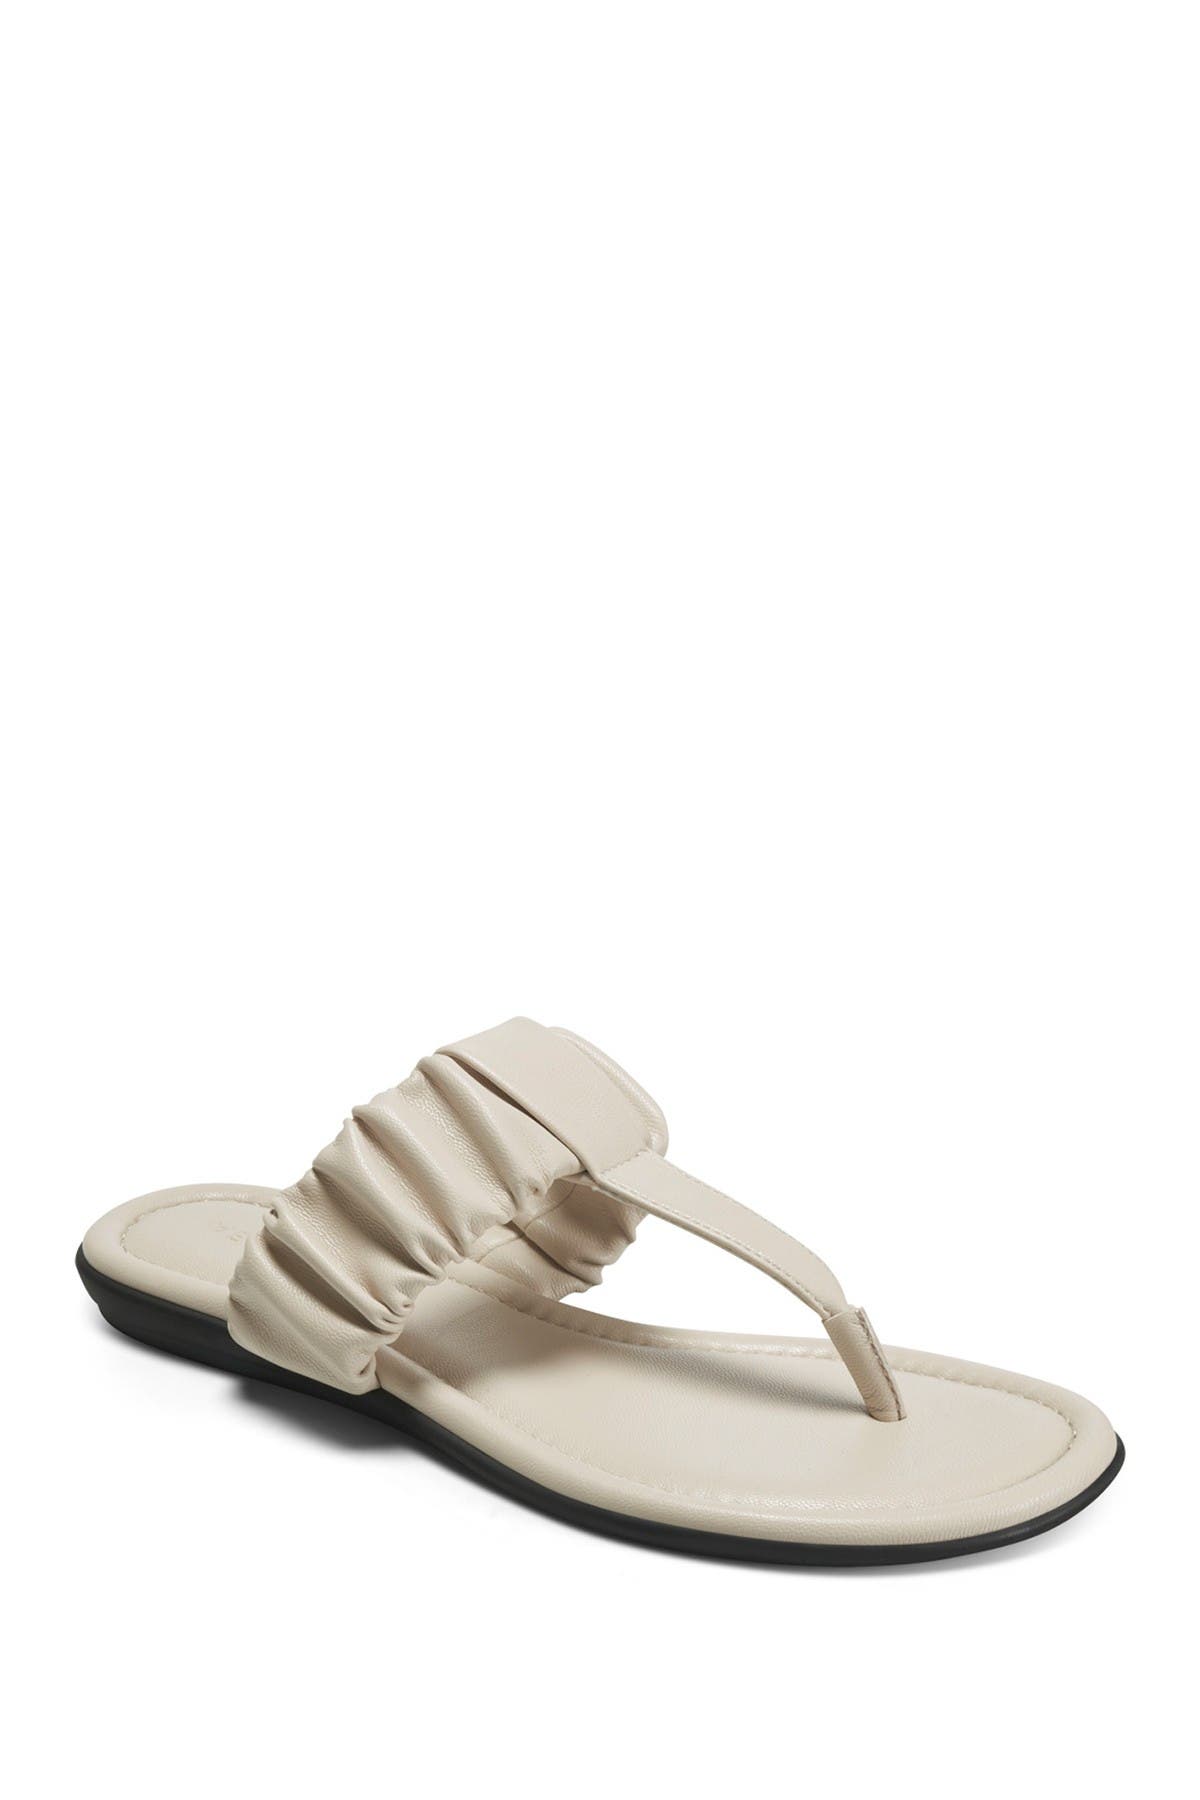 Aerosoles Cady T-strap Sandal In Open White15